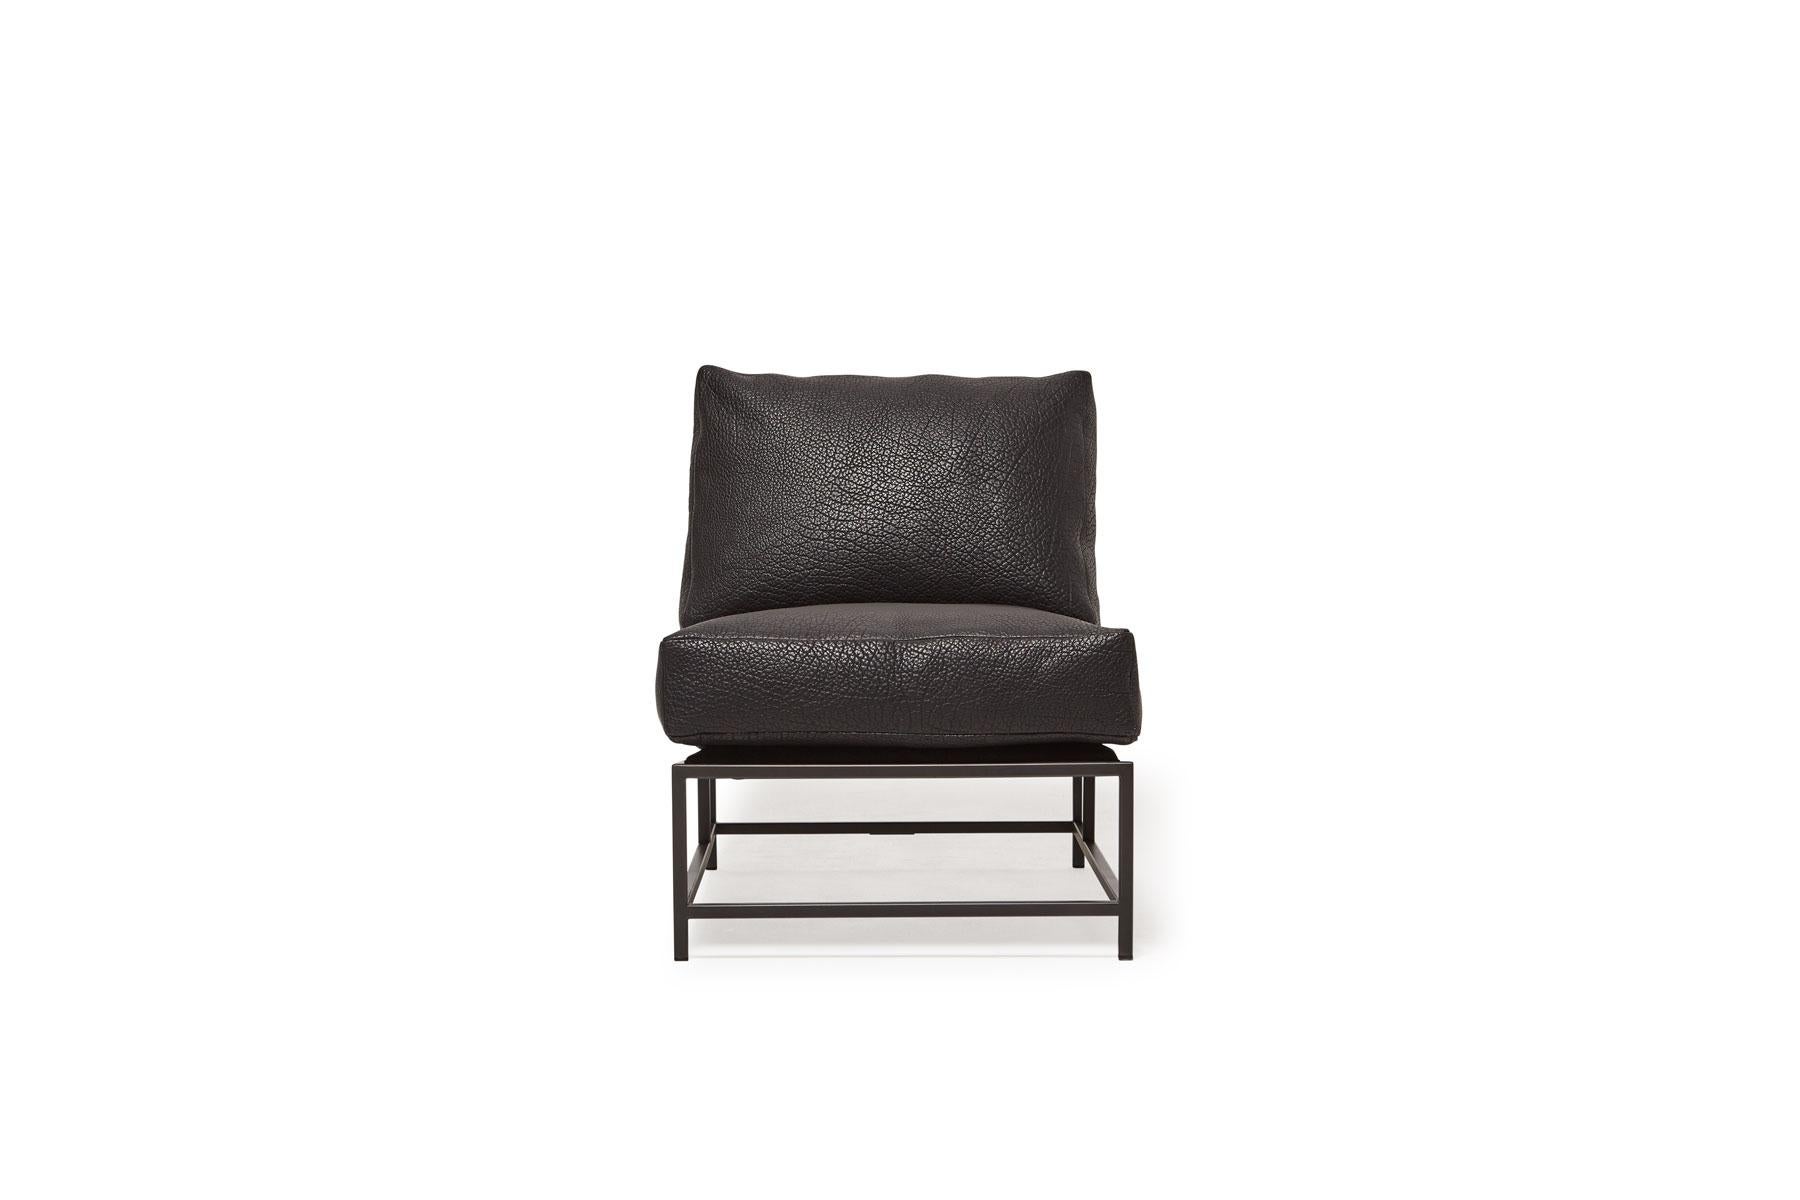 Der elegante und raffinierte Stuhl der Inheritance Collection von Stephen Kenn ist eine großartige Ergänzung für fast jeden Raum. 

Dieser Stuhl ist mit schwarzem Bisonleder gepolstert, das eine schöne Struktur aufweist. Das Schaumstoff-Sitzkissen